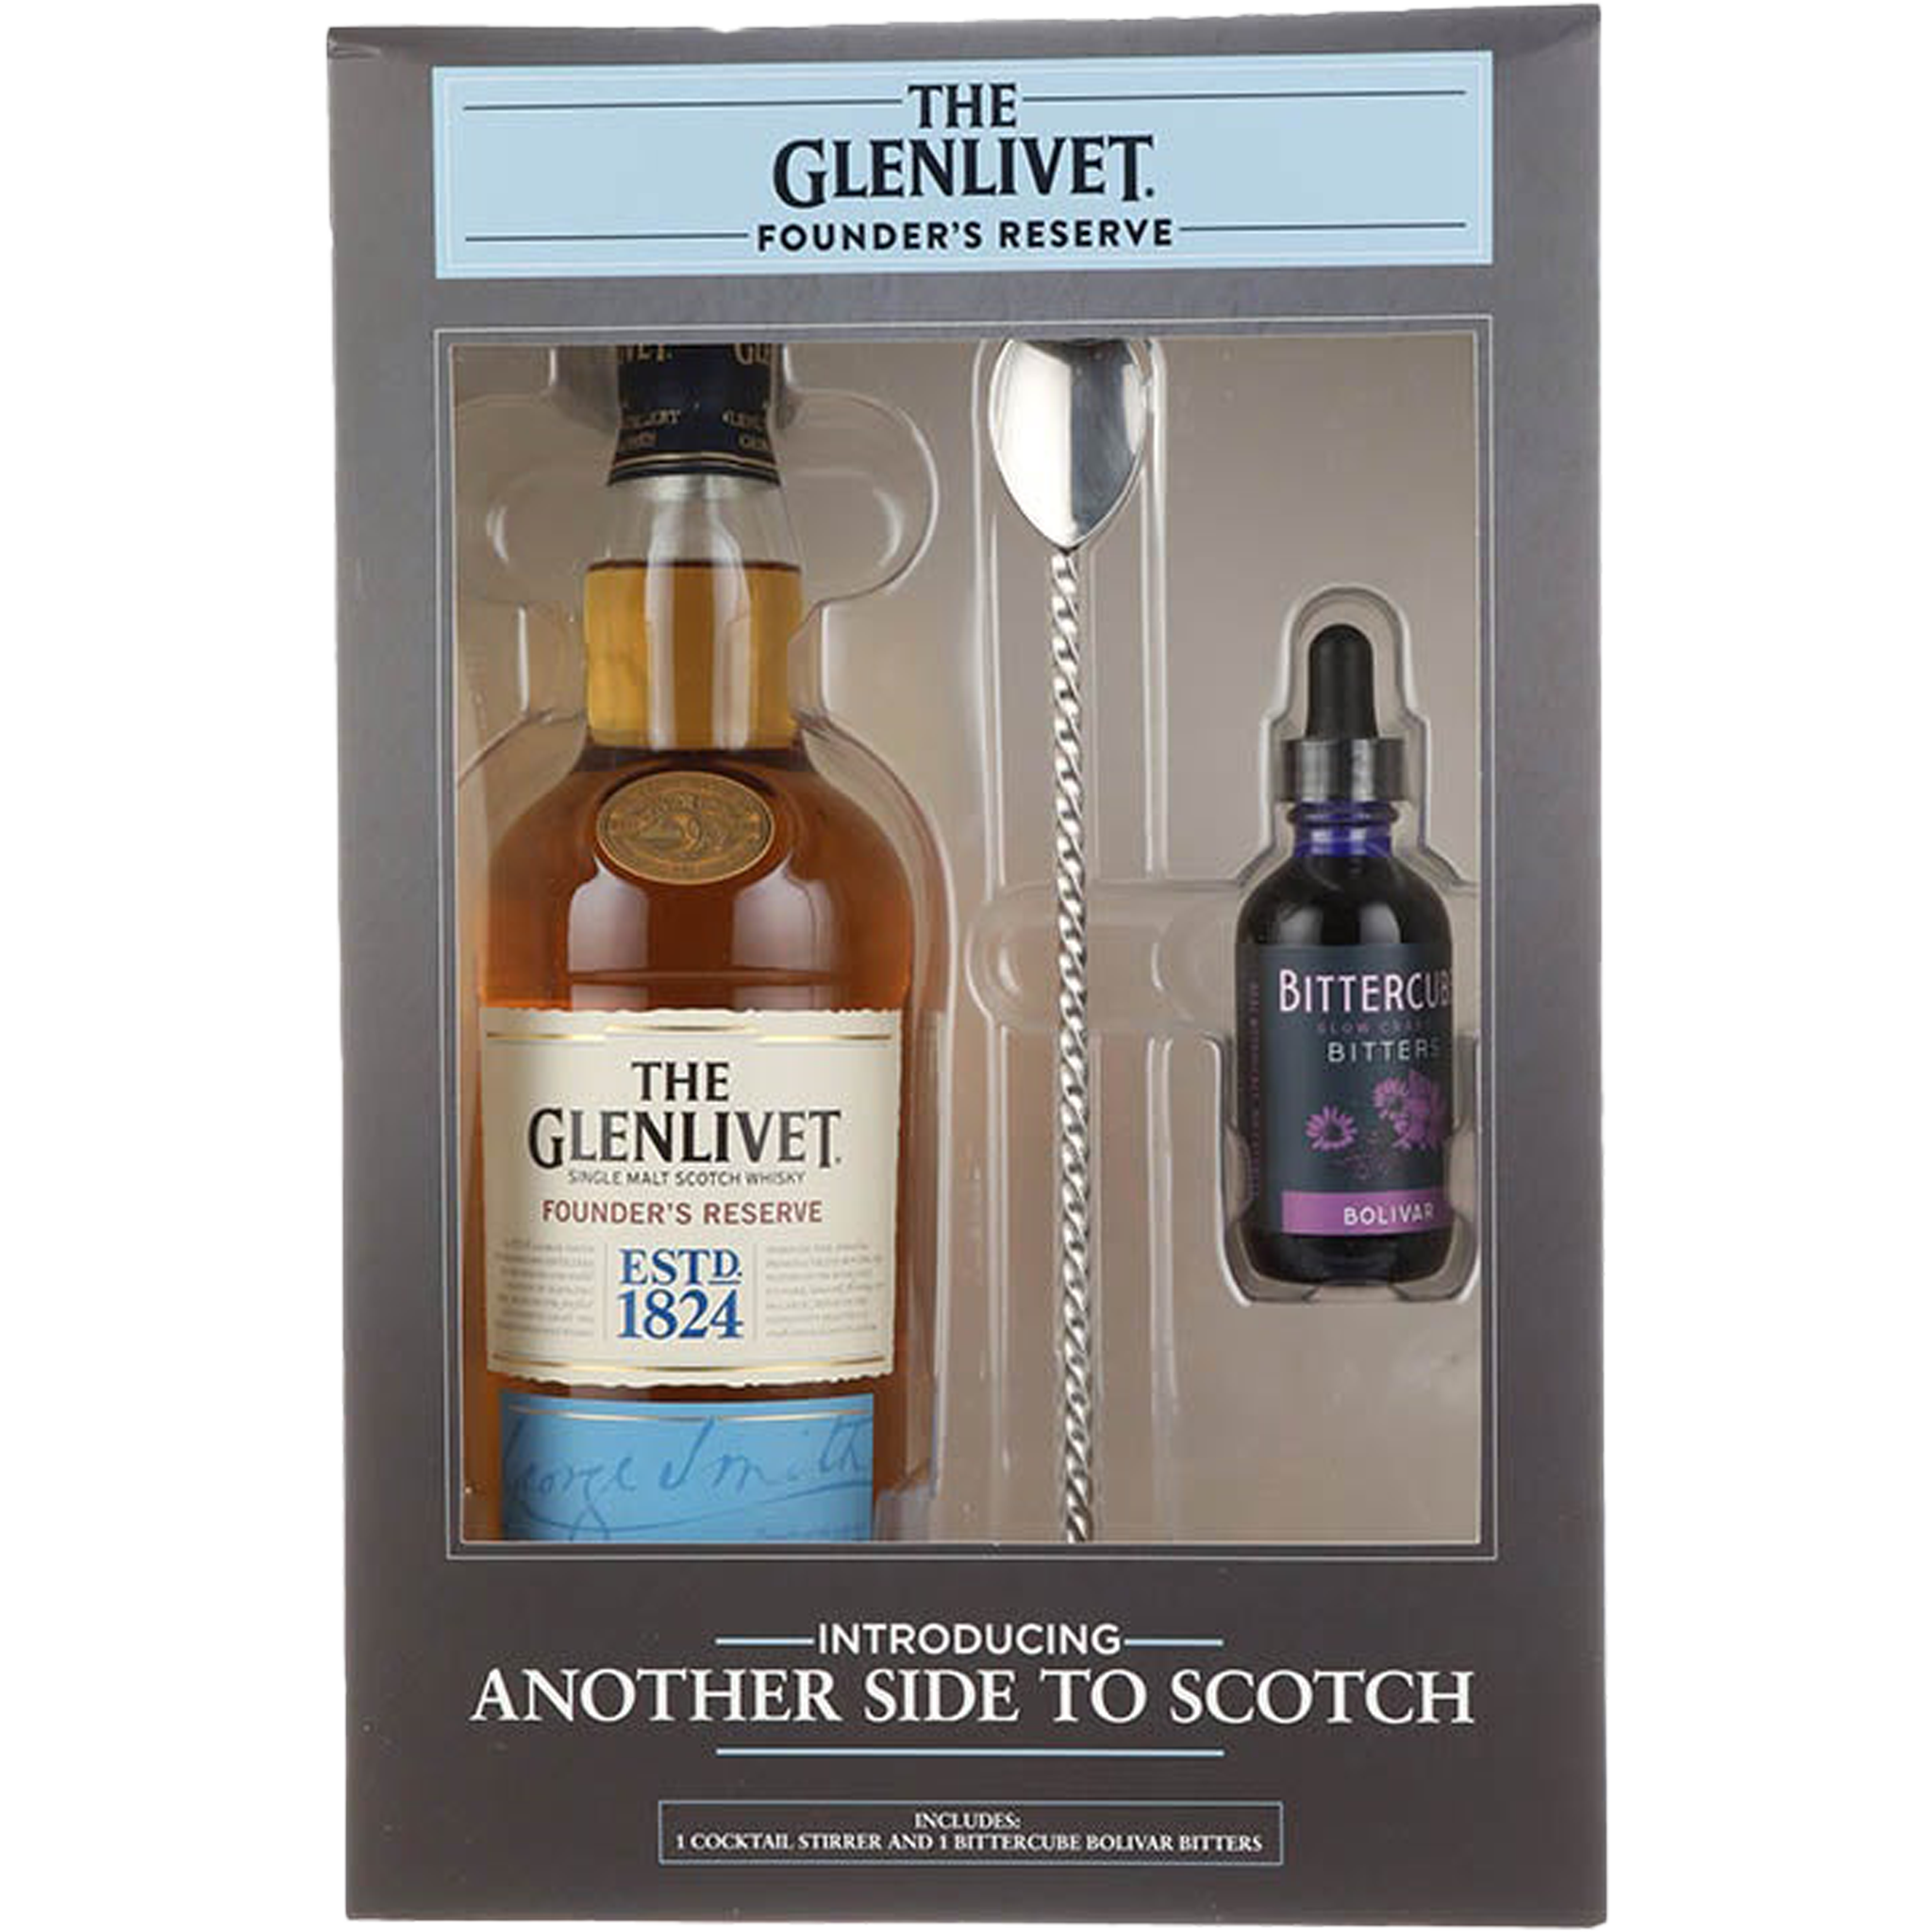 The Glenlivet Founder's Reserve Gift Set